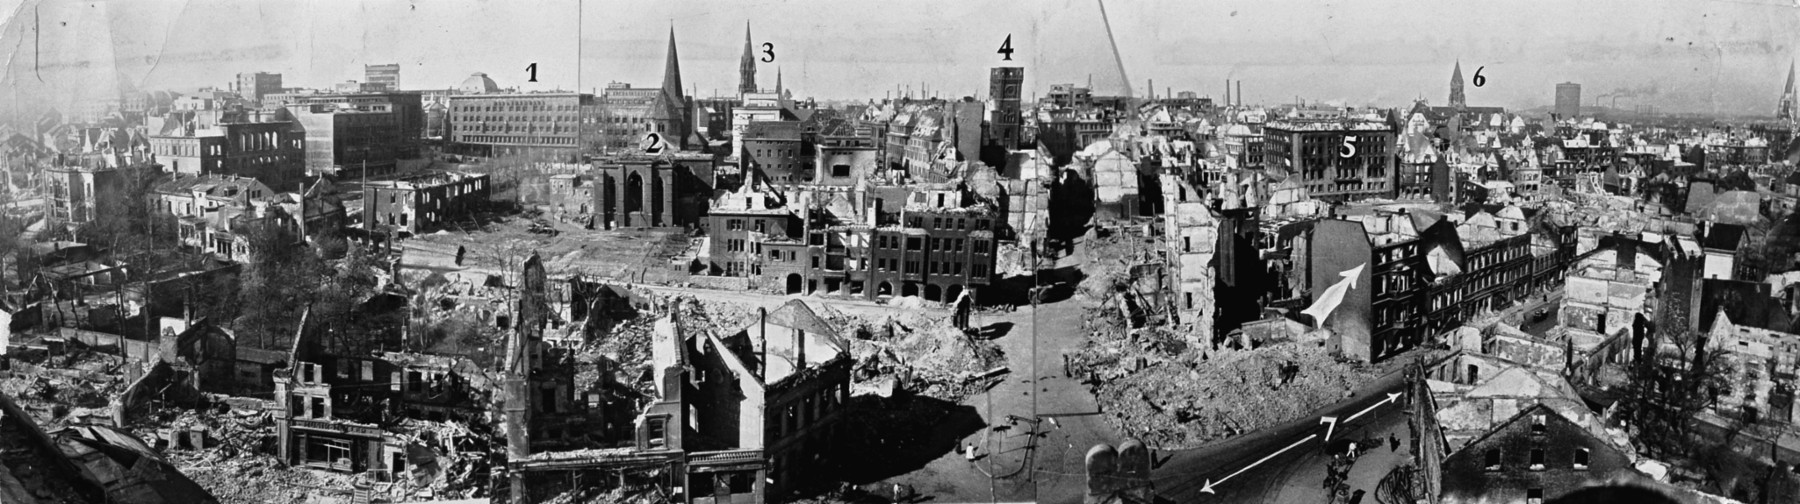 Essen 1944: die Innenstadt von der Kuppel der Synagoge aus gesehen.